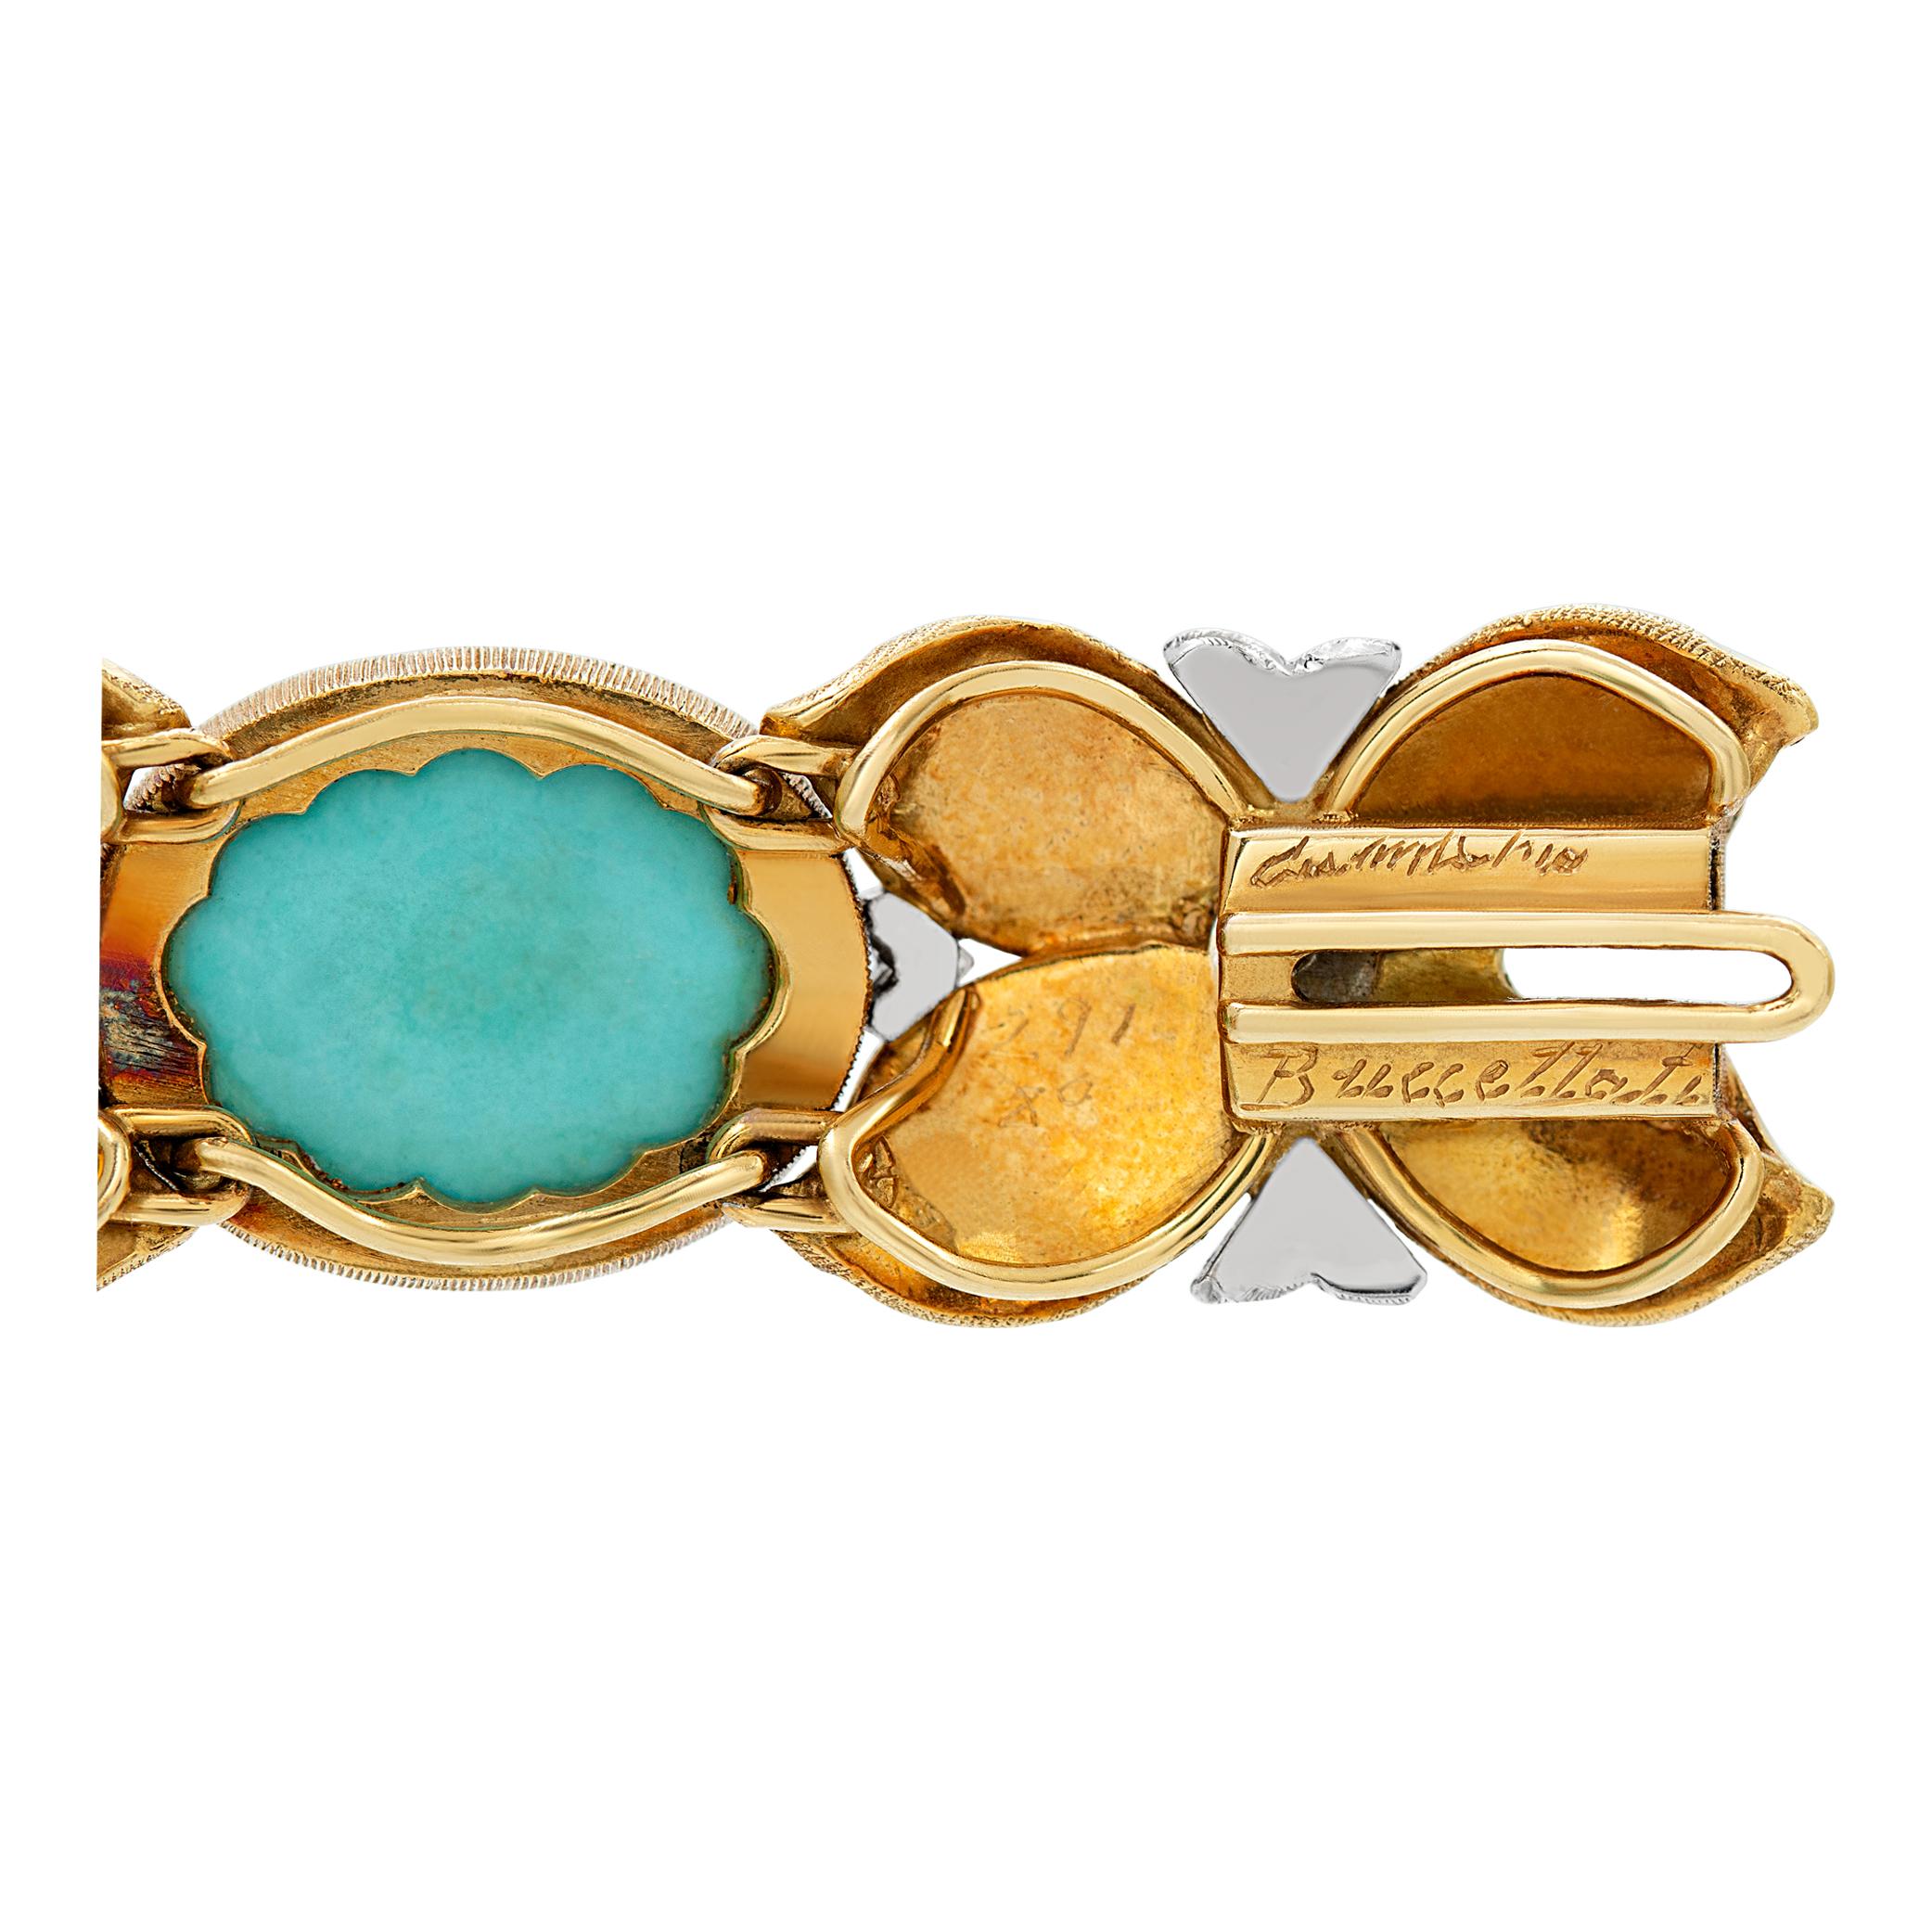 Armband mit Perlen und Türkisen im Buccellati-Blatt-Design aus 18 Karat Gelb- und Weißgold. 6mm Perlen. 7,25 cm lang, 0,50 cm breit. Ca. 1970er Jahre.